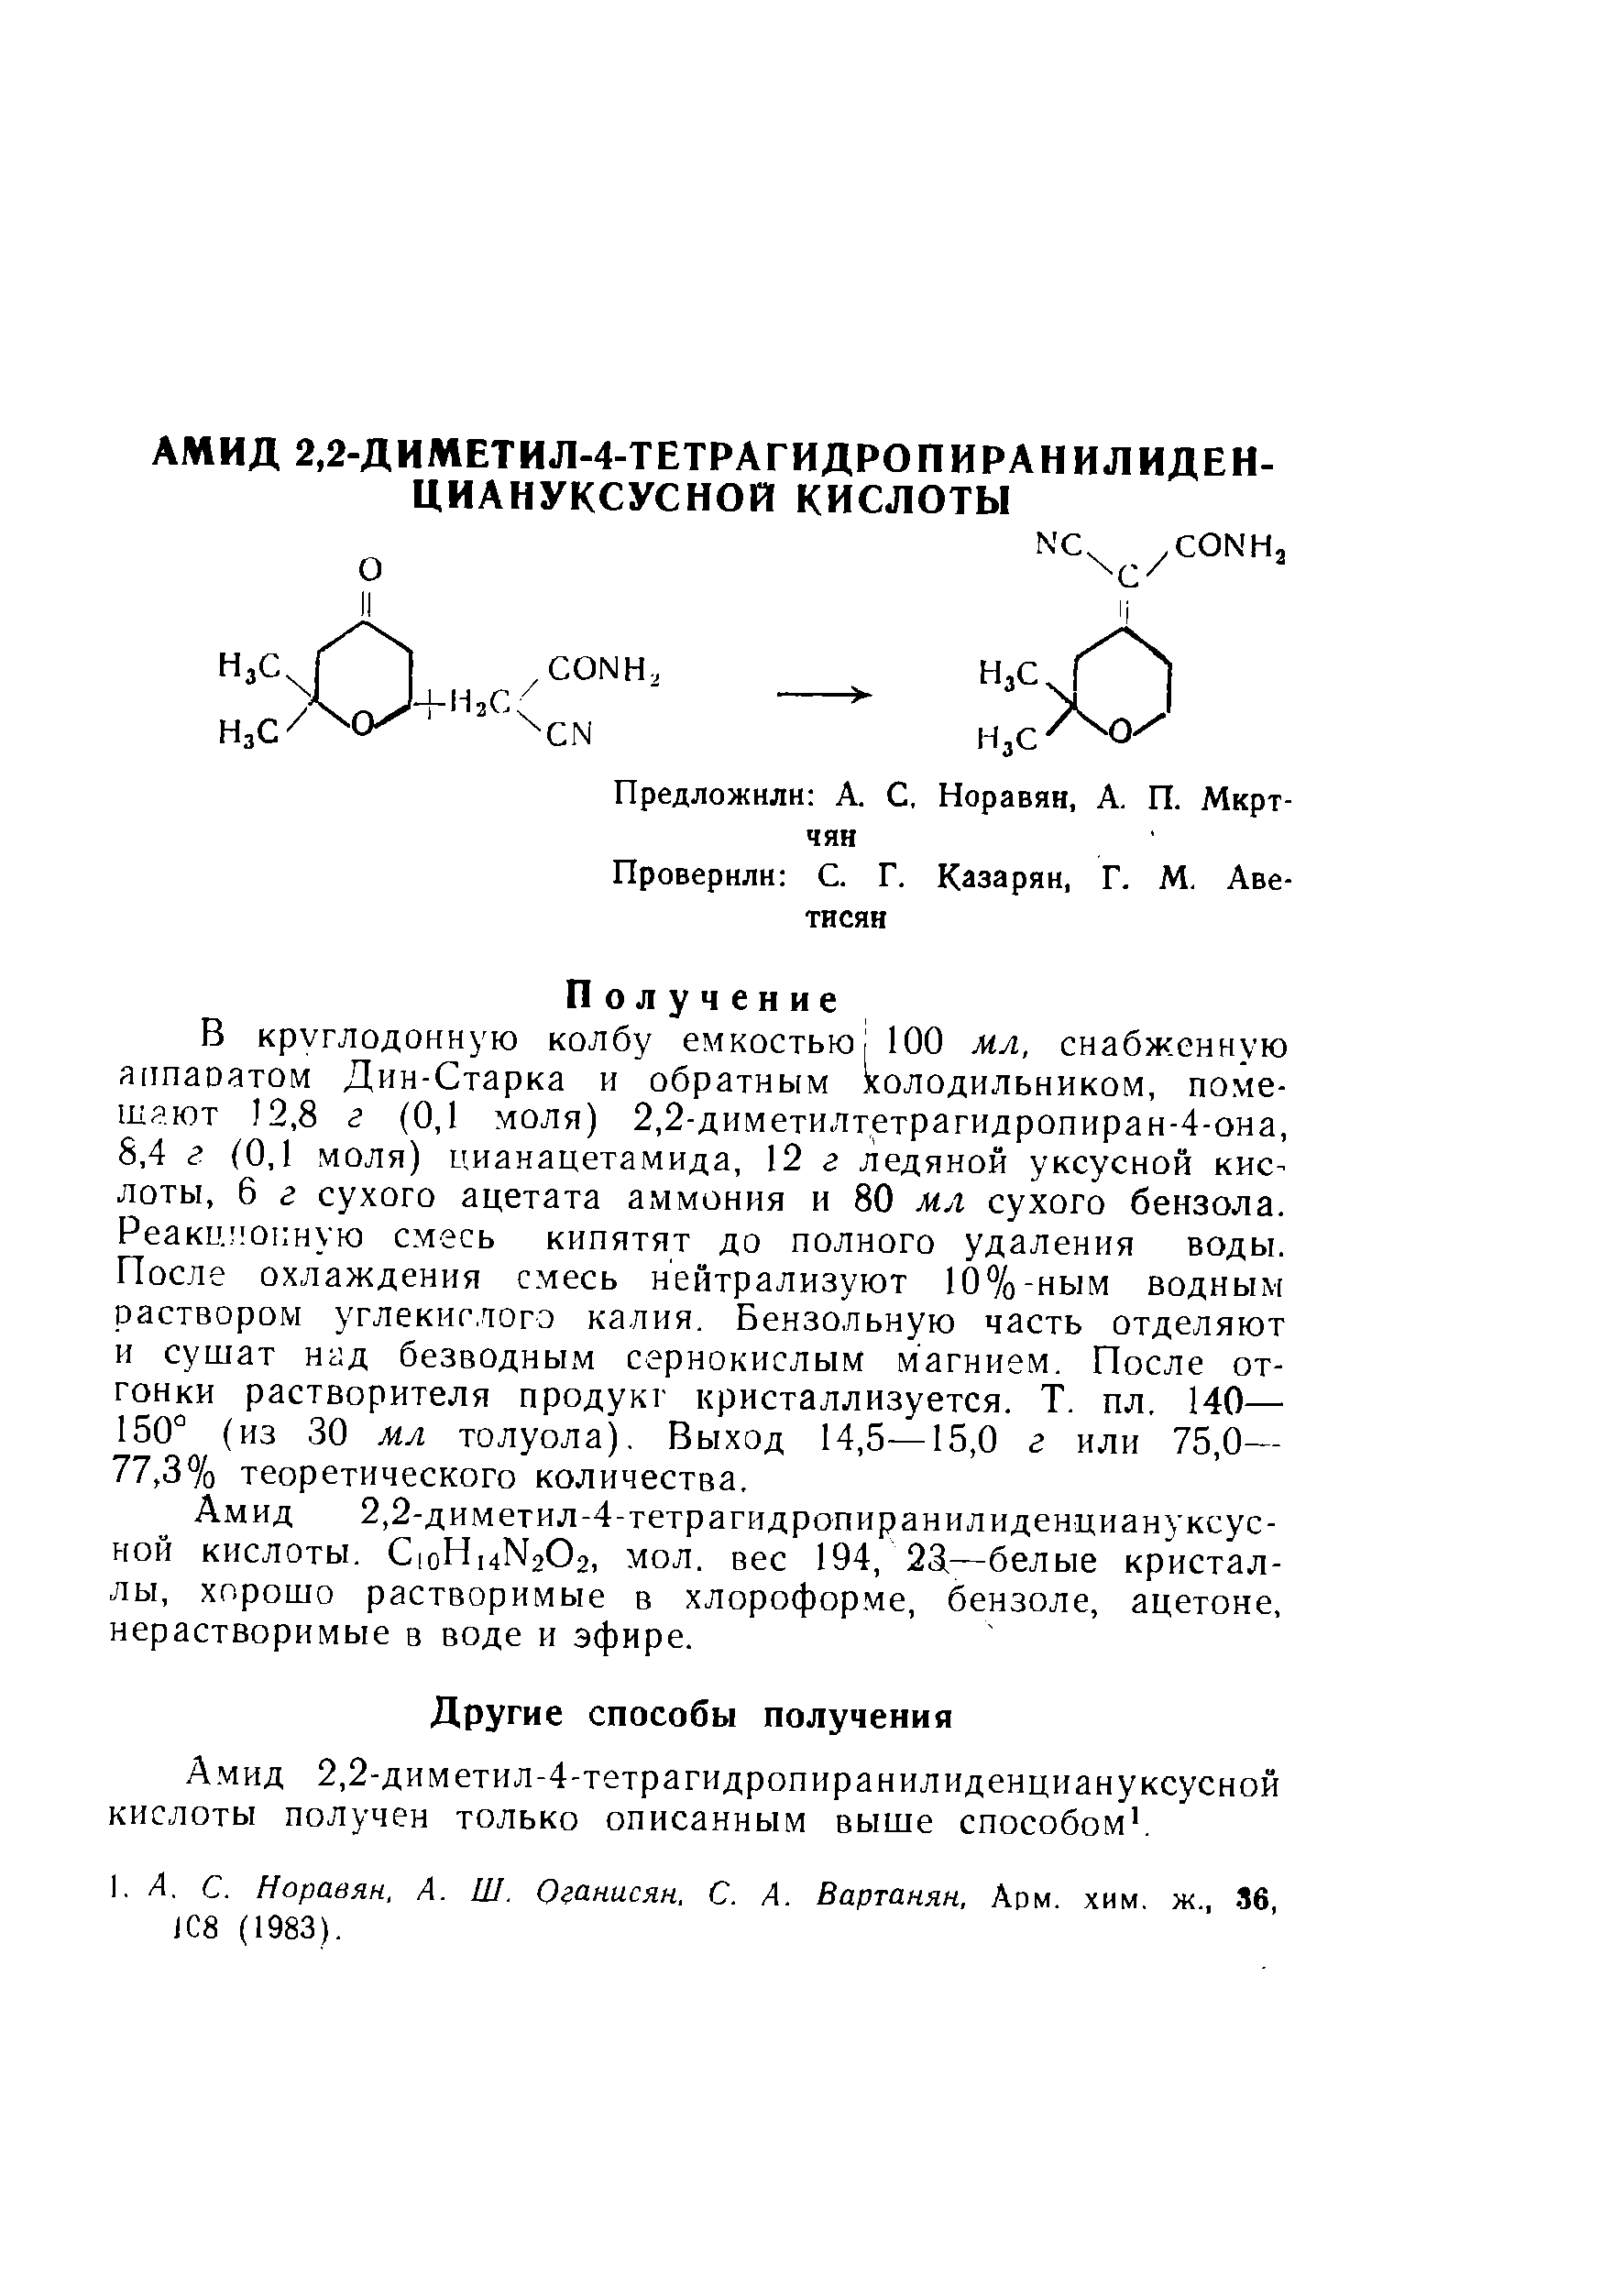 Амид 2,2-диметил-4-тетрагидропиранилиденциануксусной кислоты получен только описанным выше способом. 